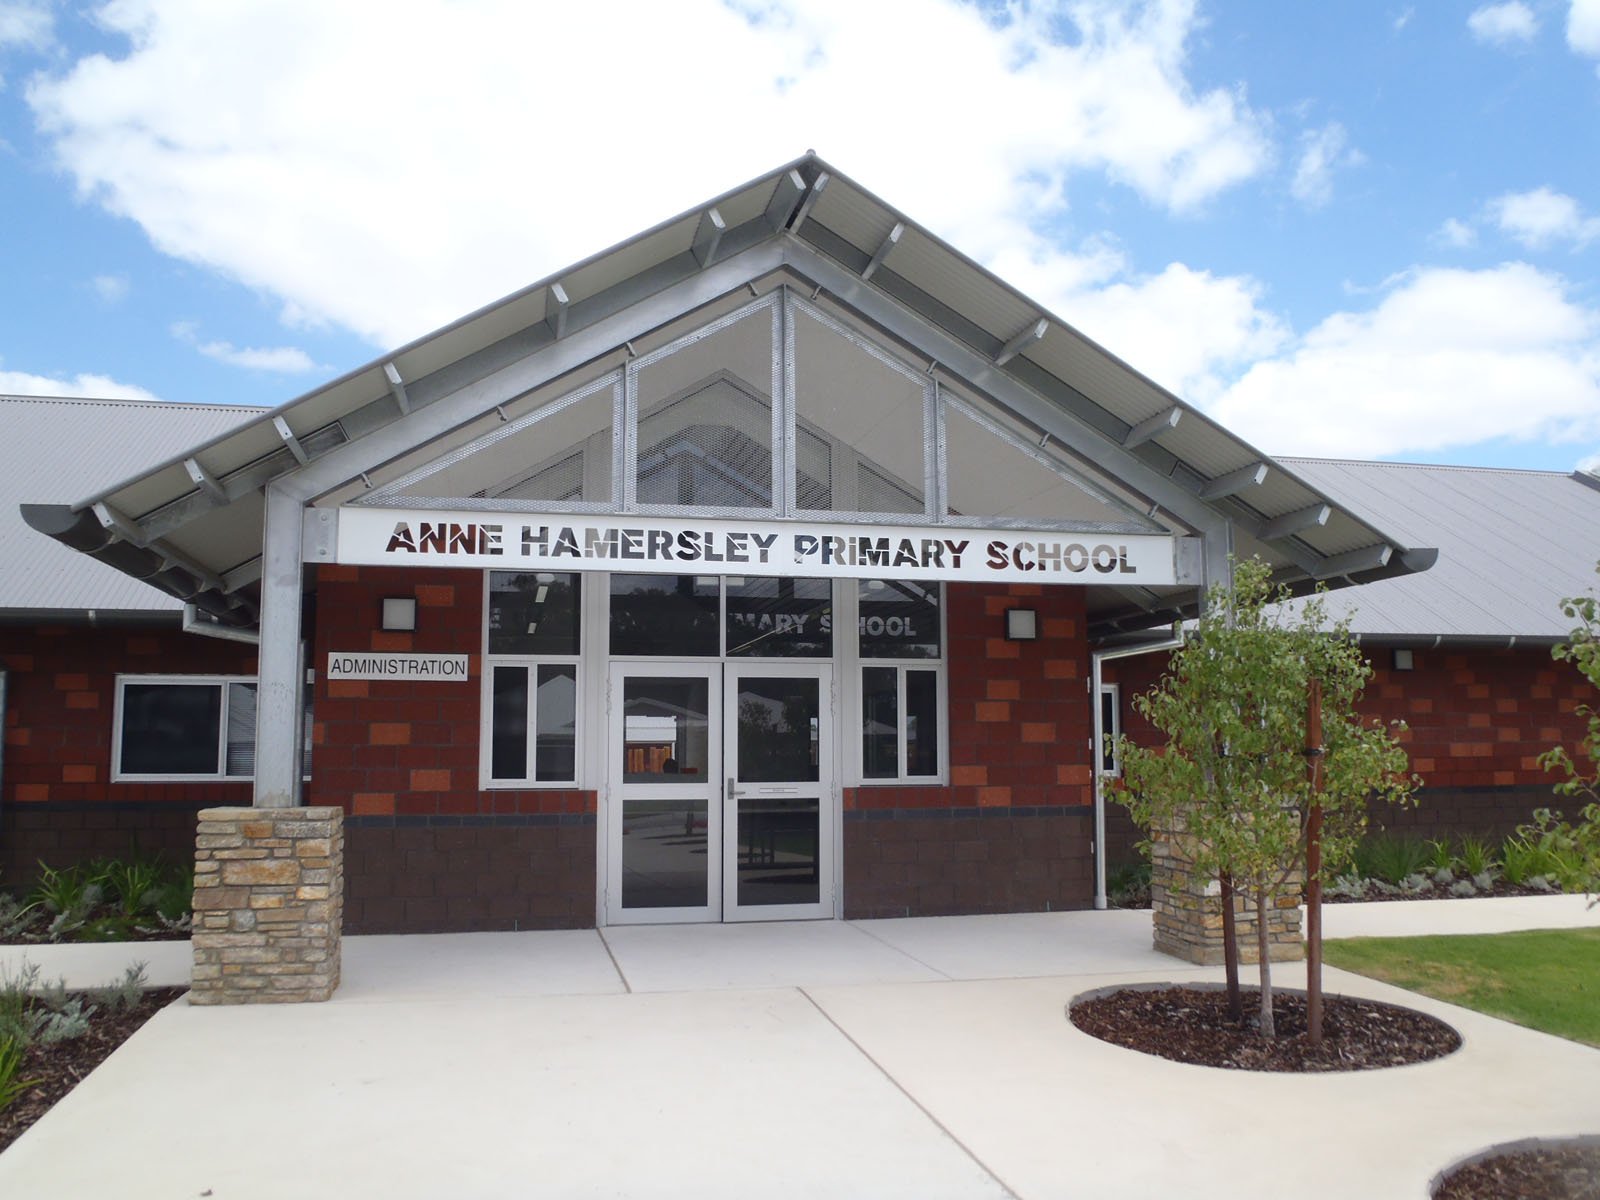 Anne Hamersley Primary School